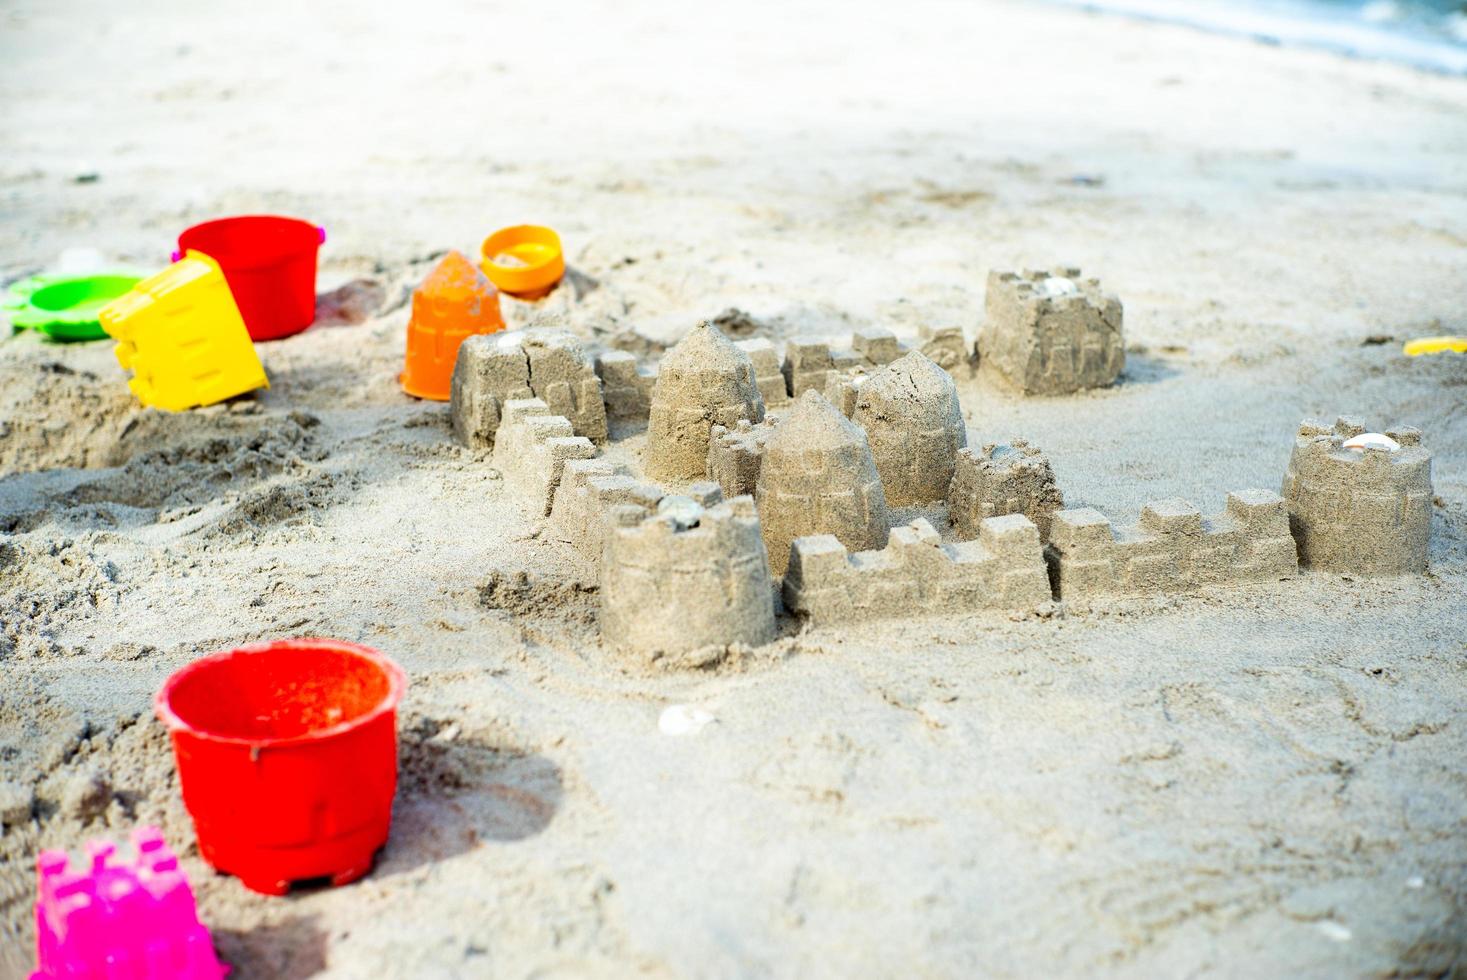 el castillo de arena construido con moldes de plástico en la playa foto